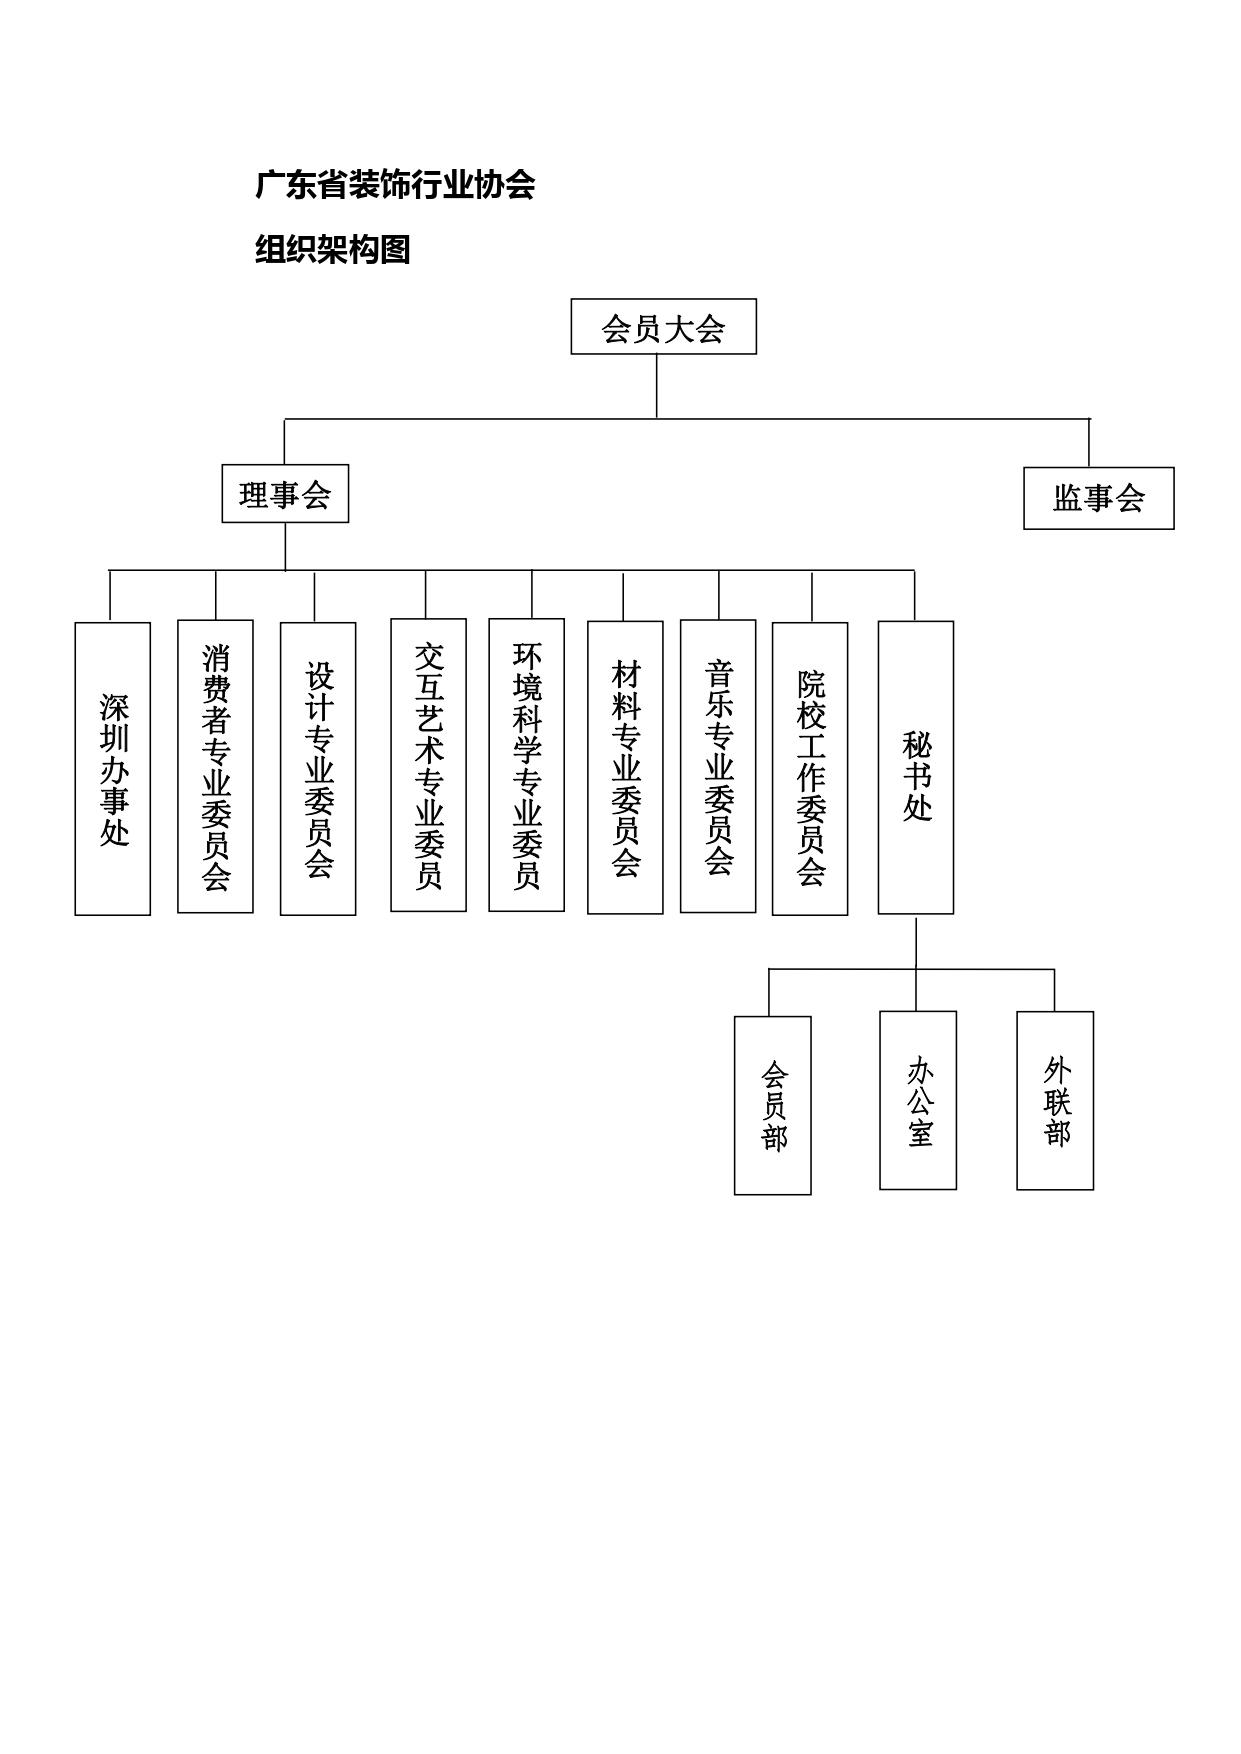 广东省装饰行业协会组织架构图_page-0001.jpg